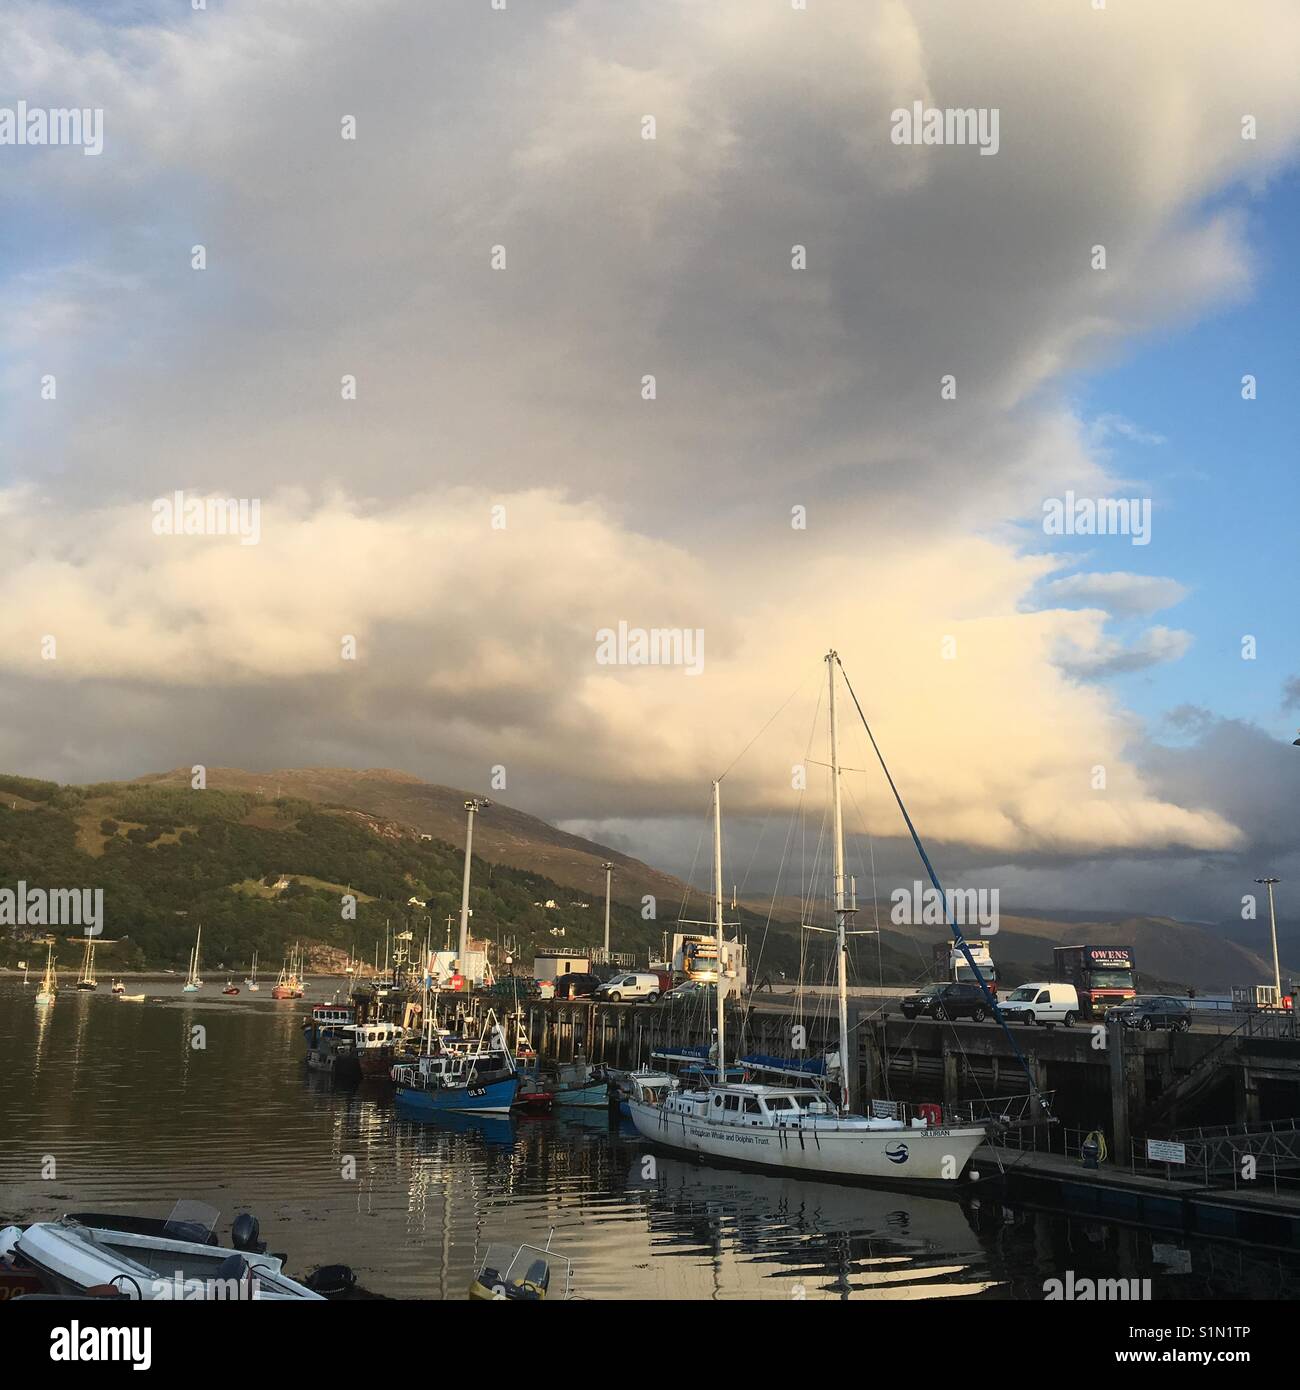 Ullapool harbour, Scotland Stock Photo